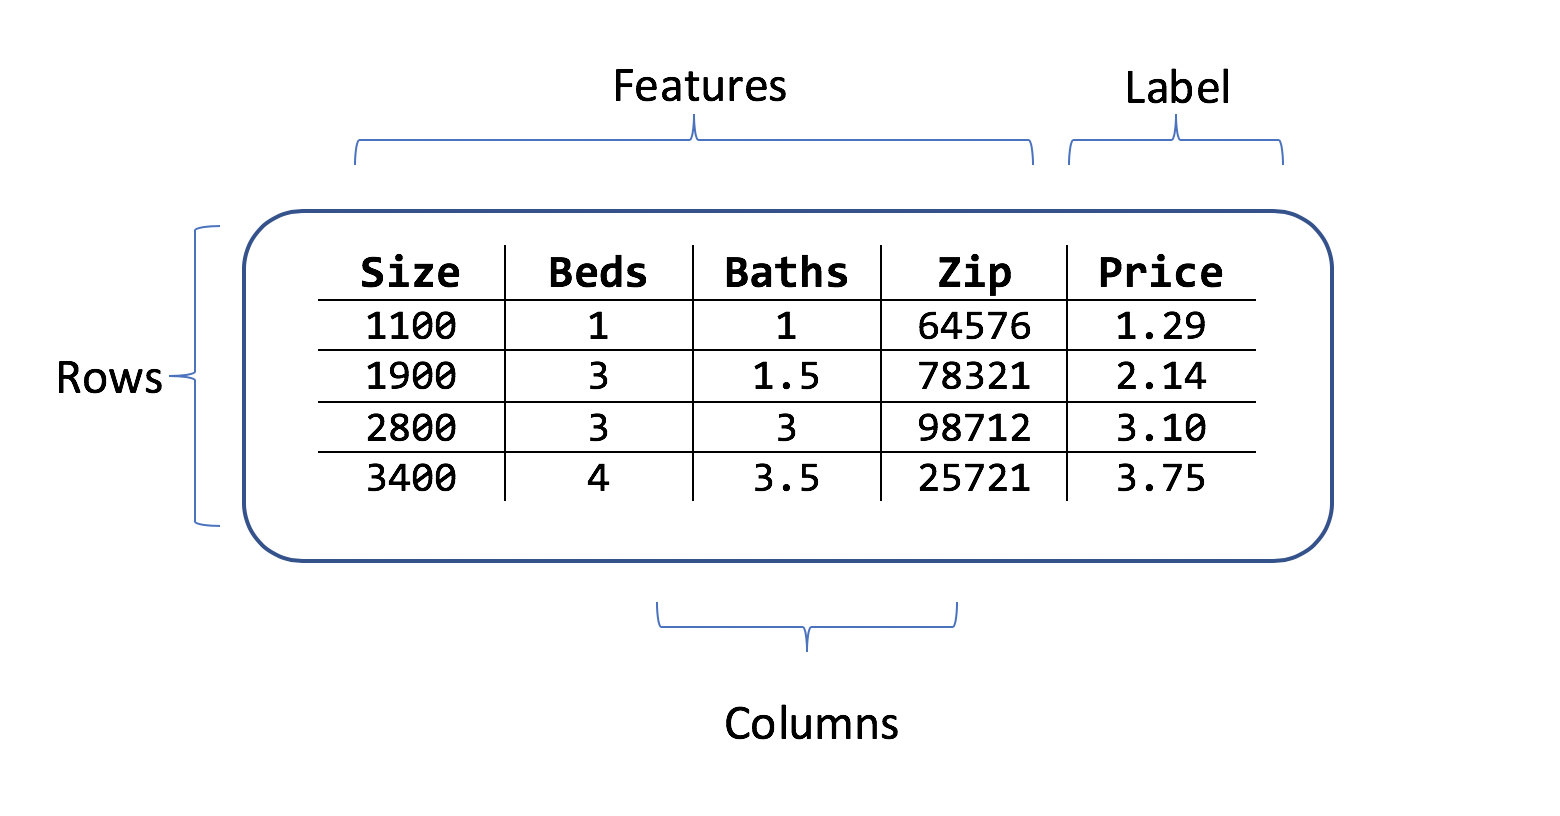 Tabela przedstawiająca wiersze i kolumny danych cen domu z funkcjami składającymi się z kodu pocztowego pomieszczeń i etykiety cen